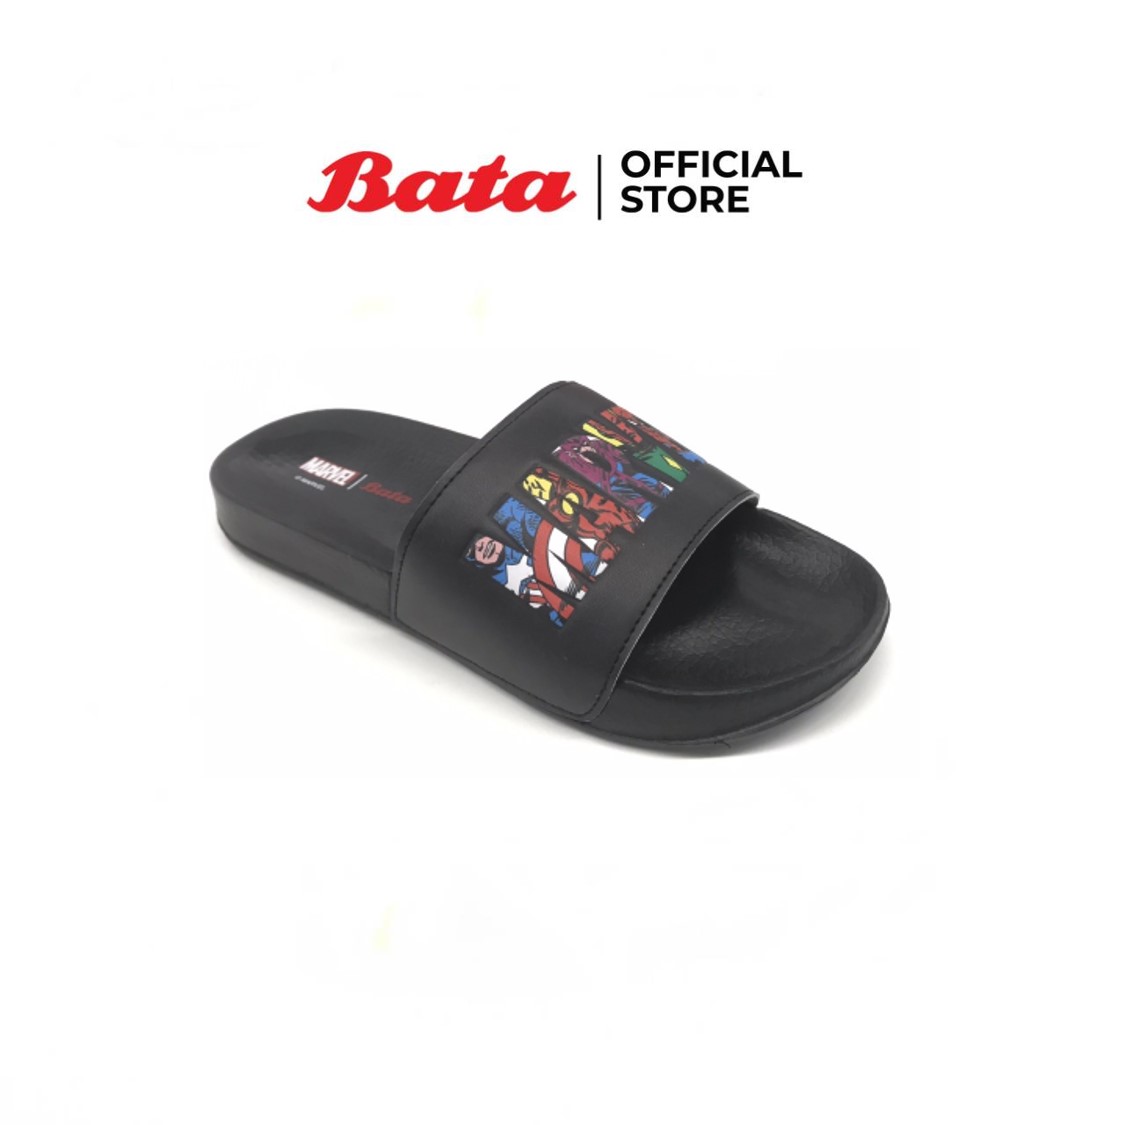 Bata บาจา รองเท้าแตะ รองเท้าลำลอง รองเท้าใส่สบาย สำหรับเด็กผู้ชาย รุ่น Redbox Marvel สีดำ 4616665 ขนาด UK 5 ขนาด UK 5